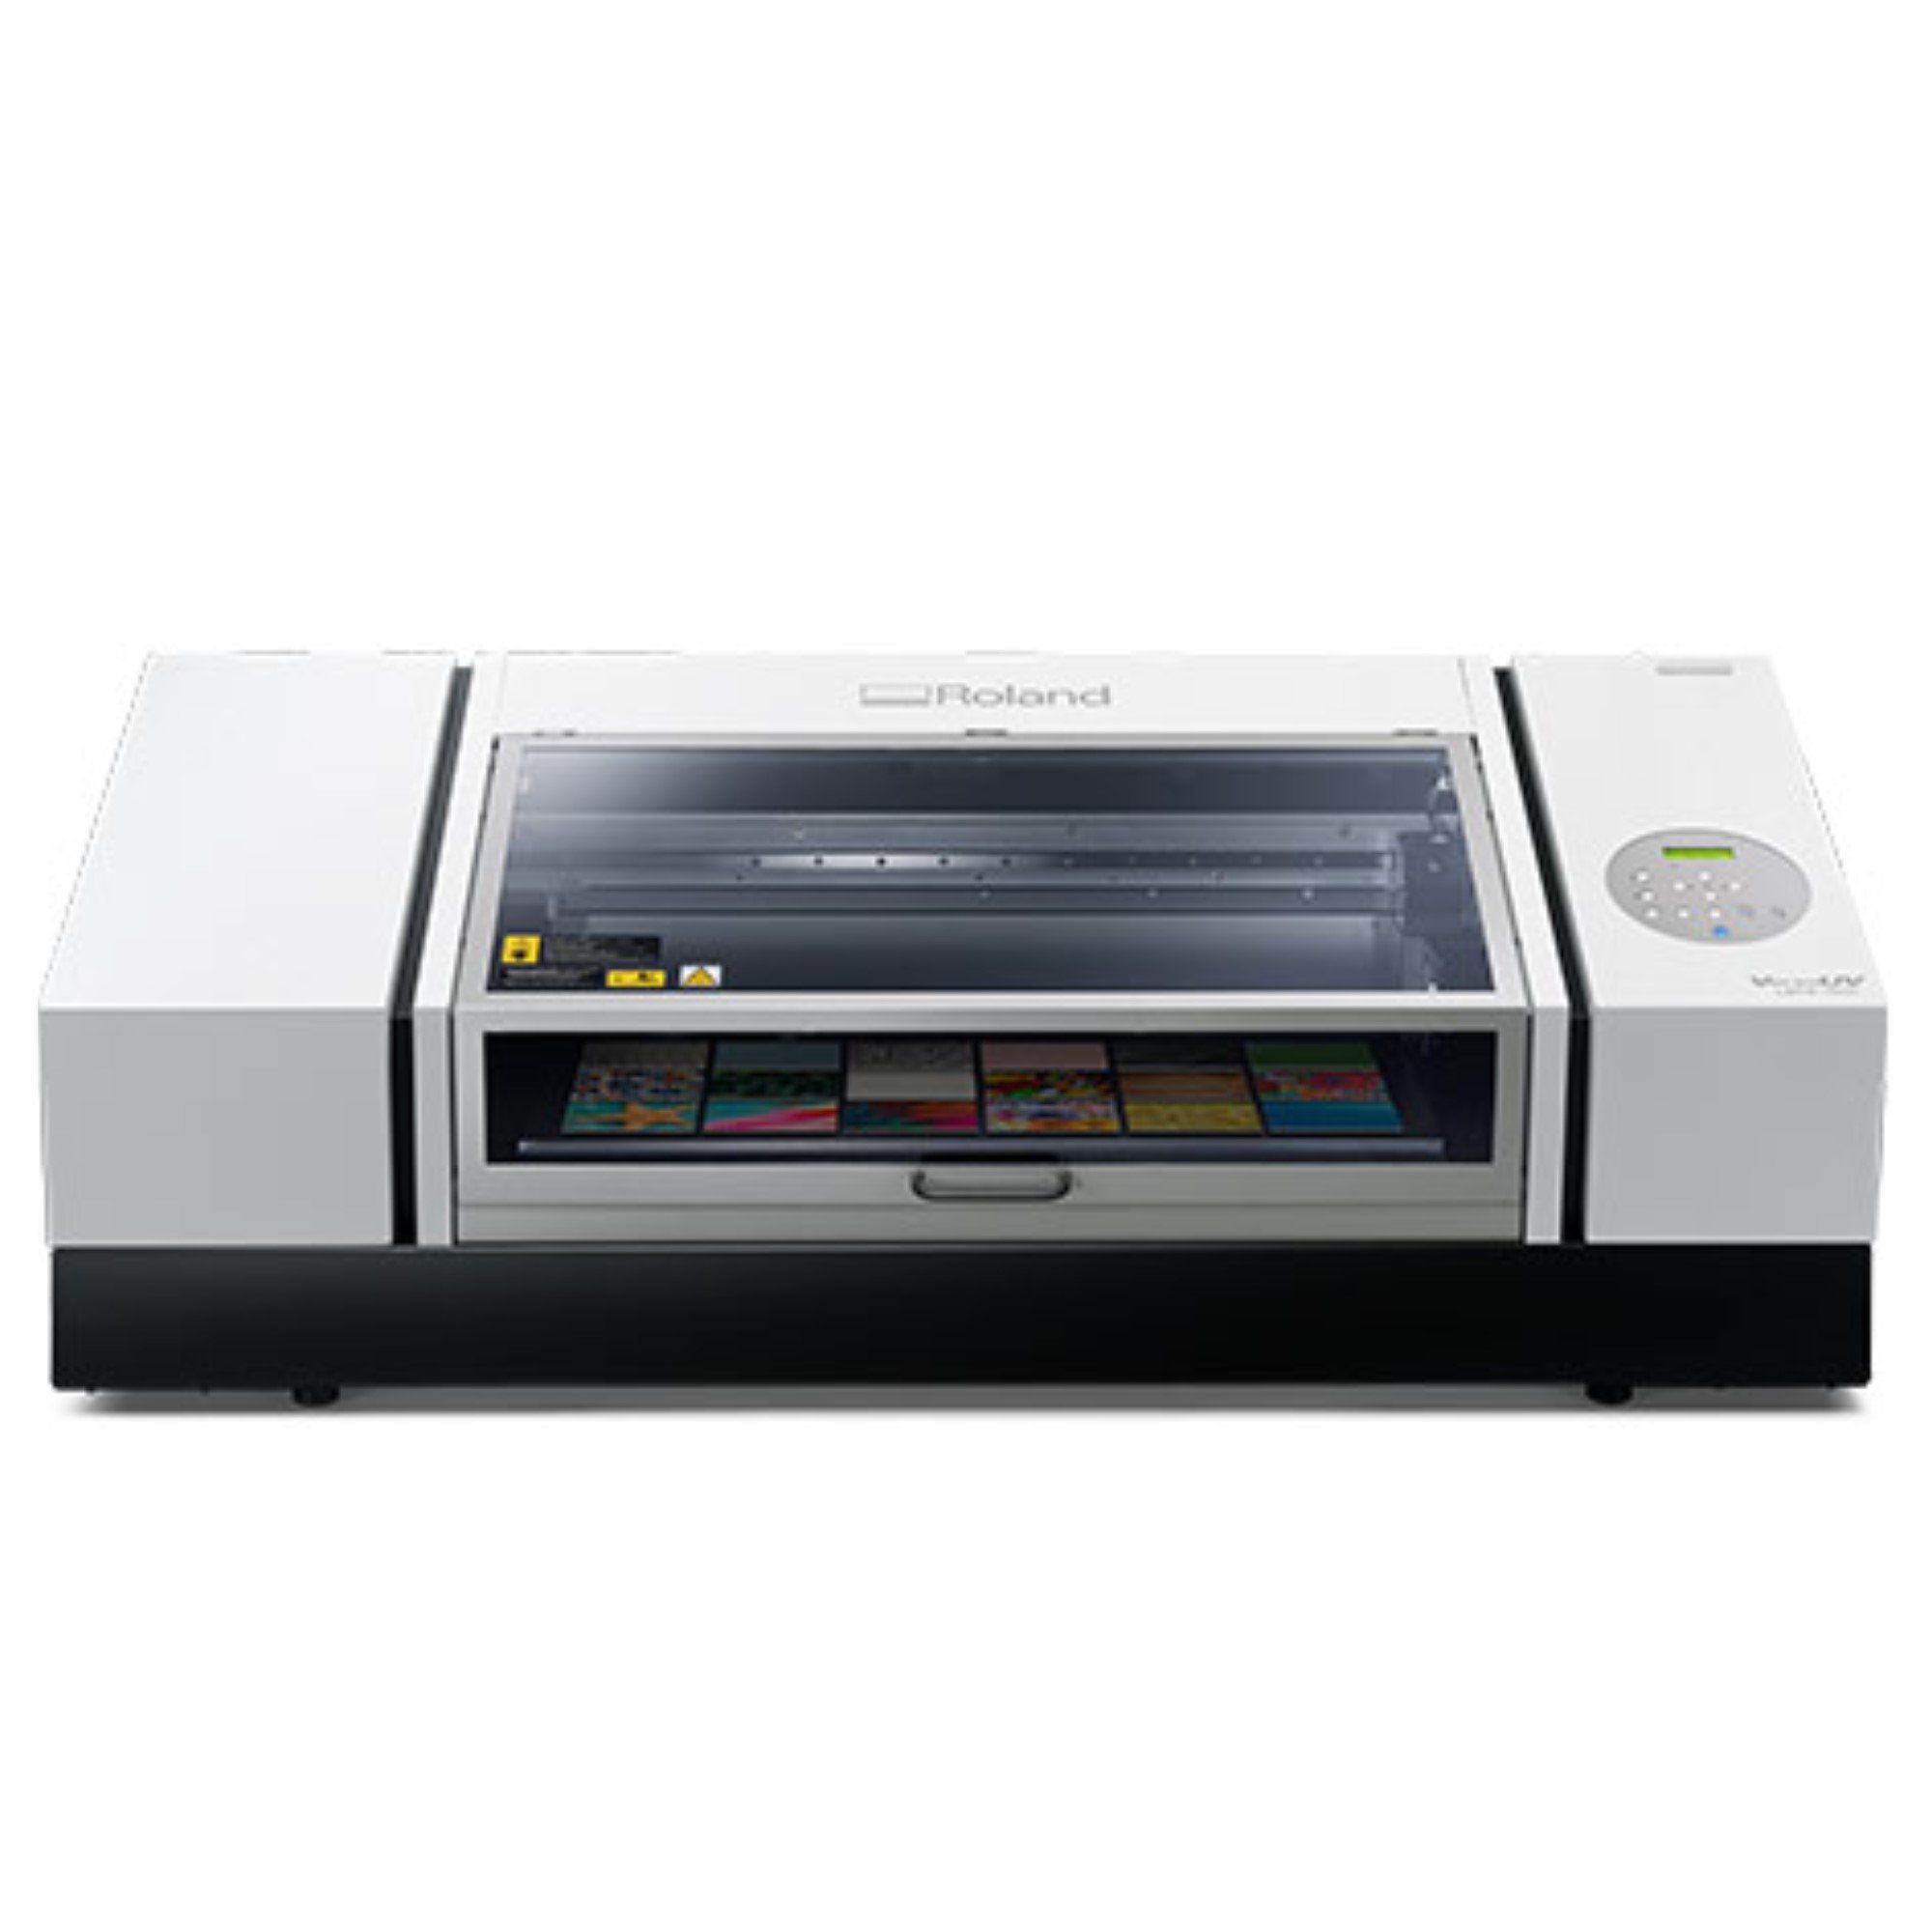 Business Card Holder Printing Jig for Roland LEF 300 Flatbed Printer